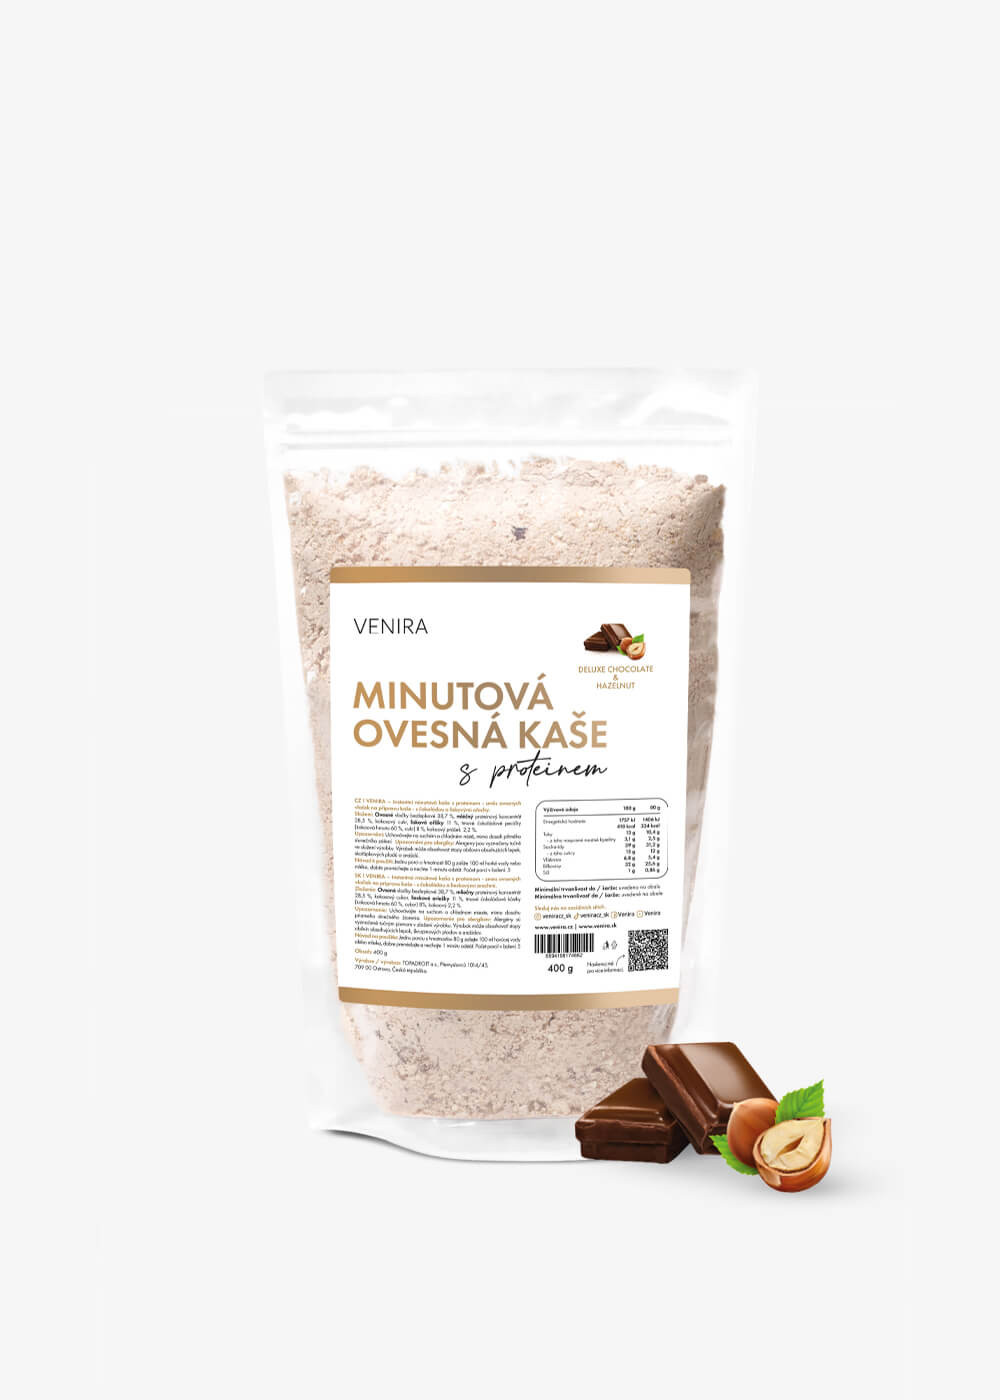 VENIRA minutová ovesná kaše s proteinem, deluxe chocolate & hazelnut, 400 g